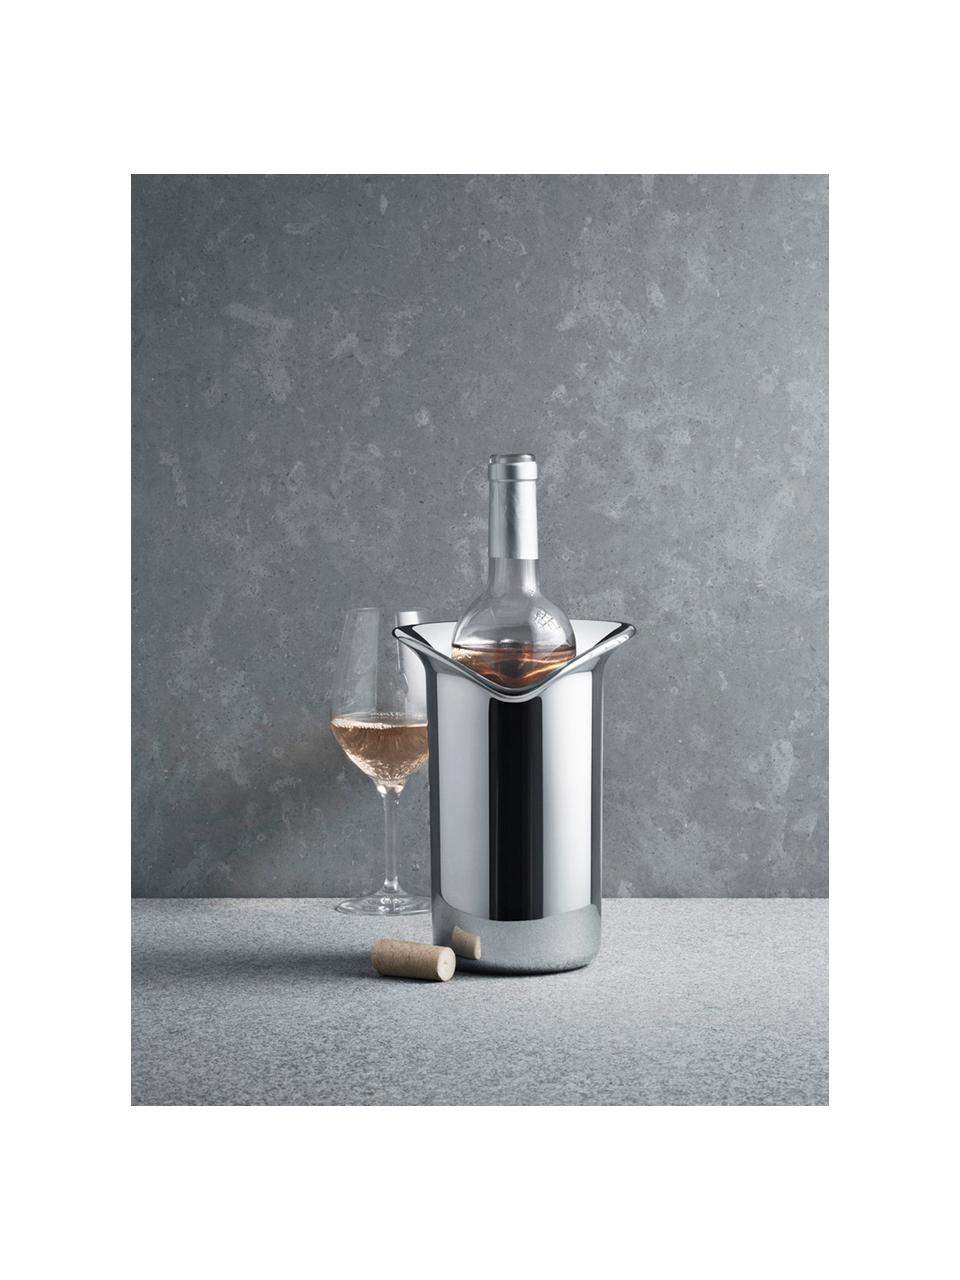 Flaschenkühler Wine & Bar aus Edelstahl, Edelstahl, hochglanzpoliert, Edelstahl, glänzend, 16 x 22 cm